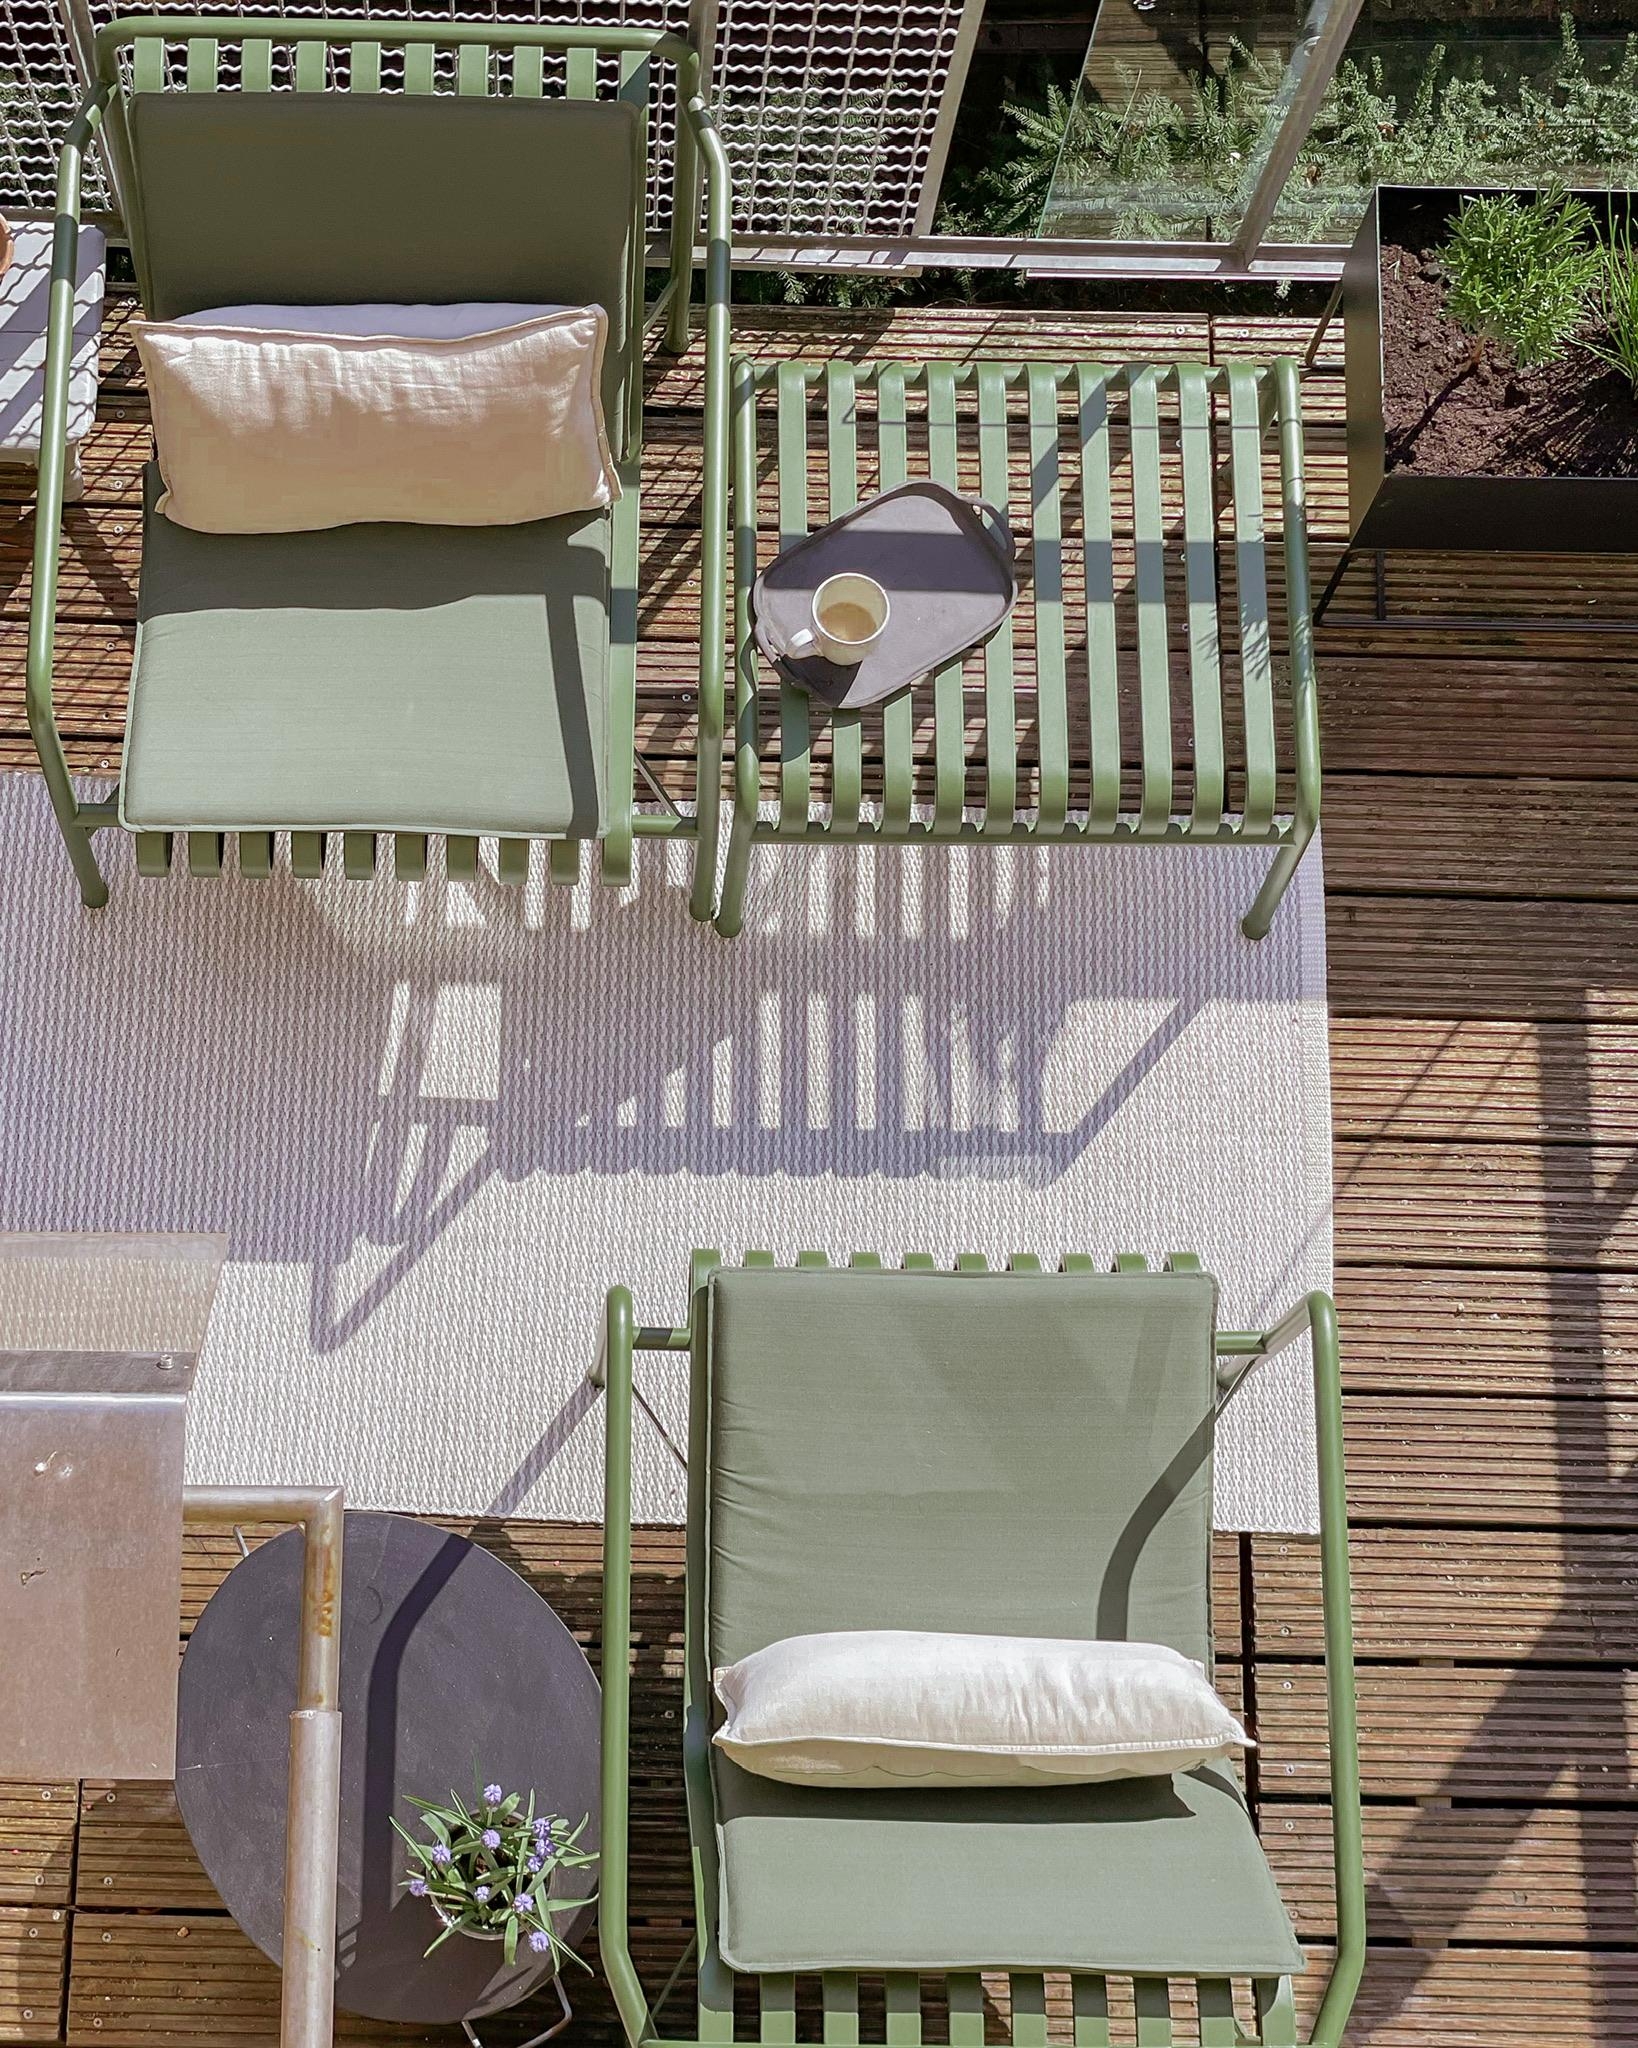 Mein #balkon von oben, ziemlich weit aus dem Fenster gelehnt...weiter ging nicht, sonst wäre ich gefallen 😂😂 #balkonien 